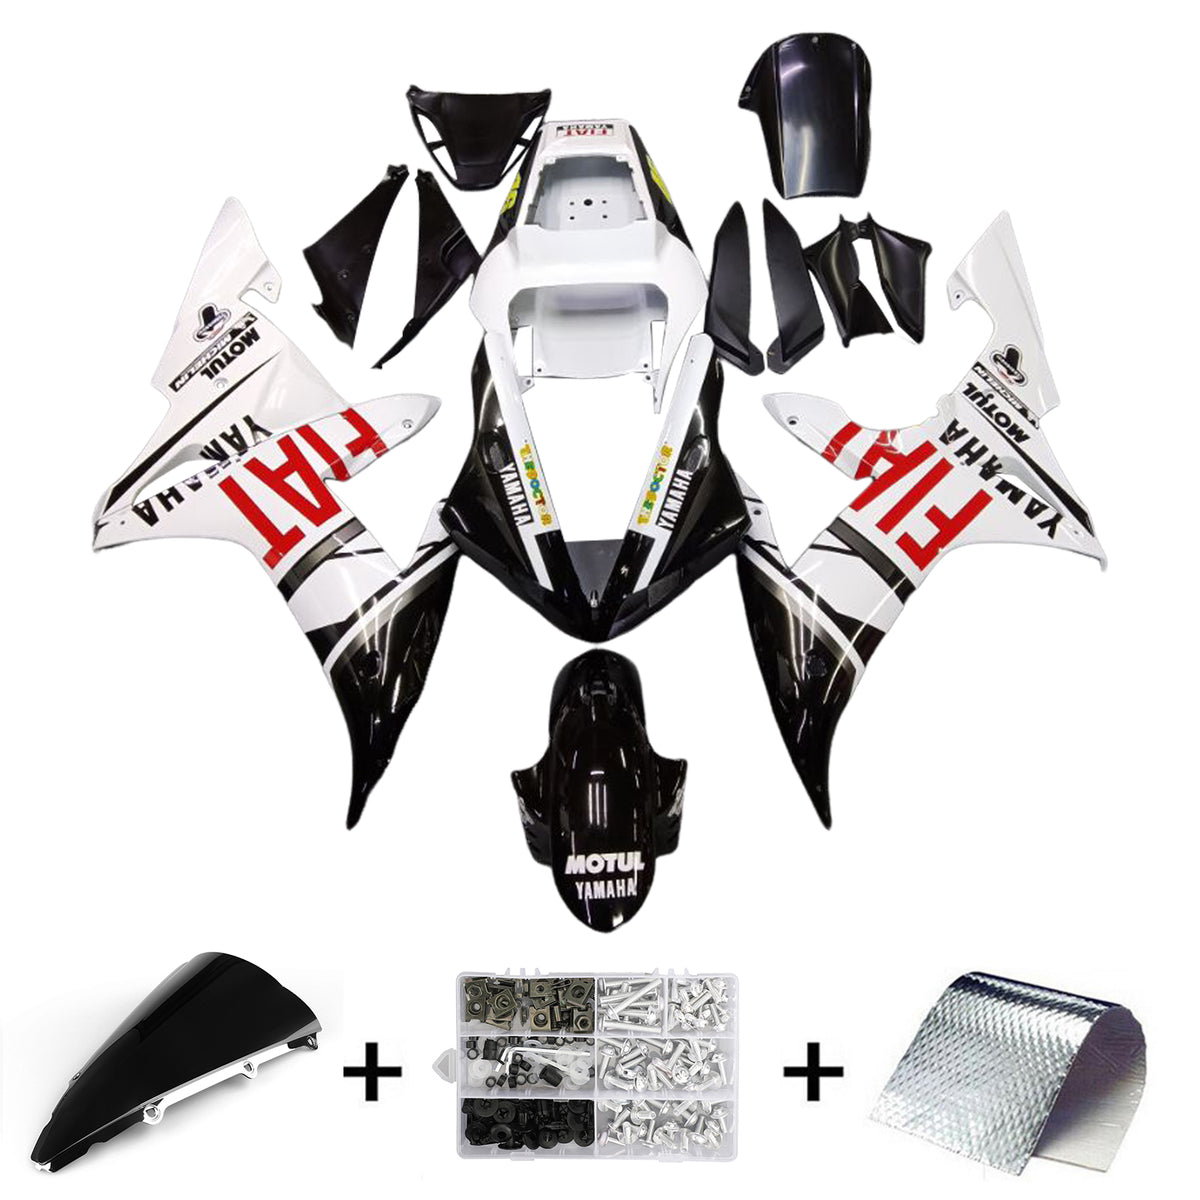 Amotopart Yamaha 2002-2003 YZF 1000 R1 Kit carena logo bianco nero